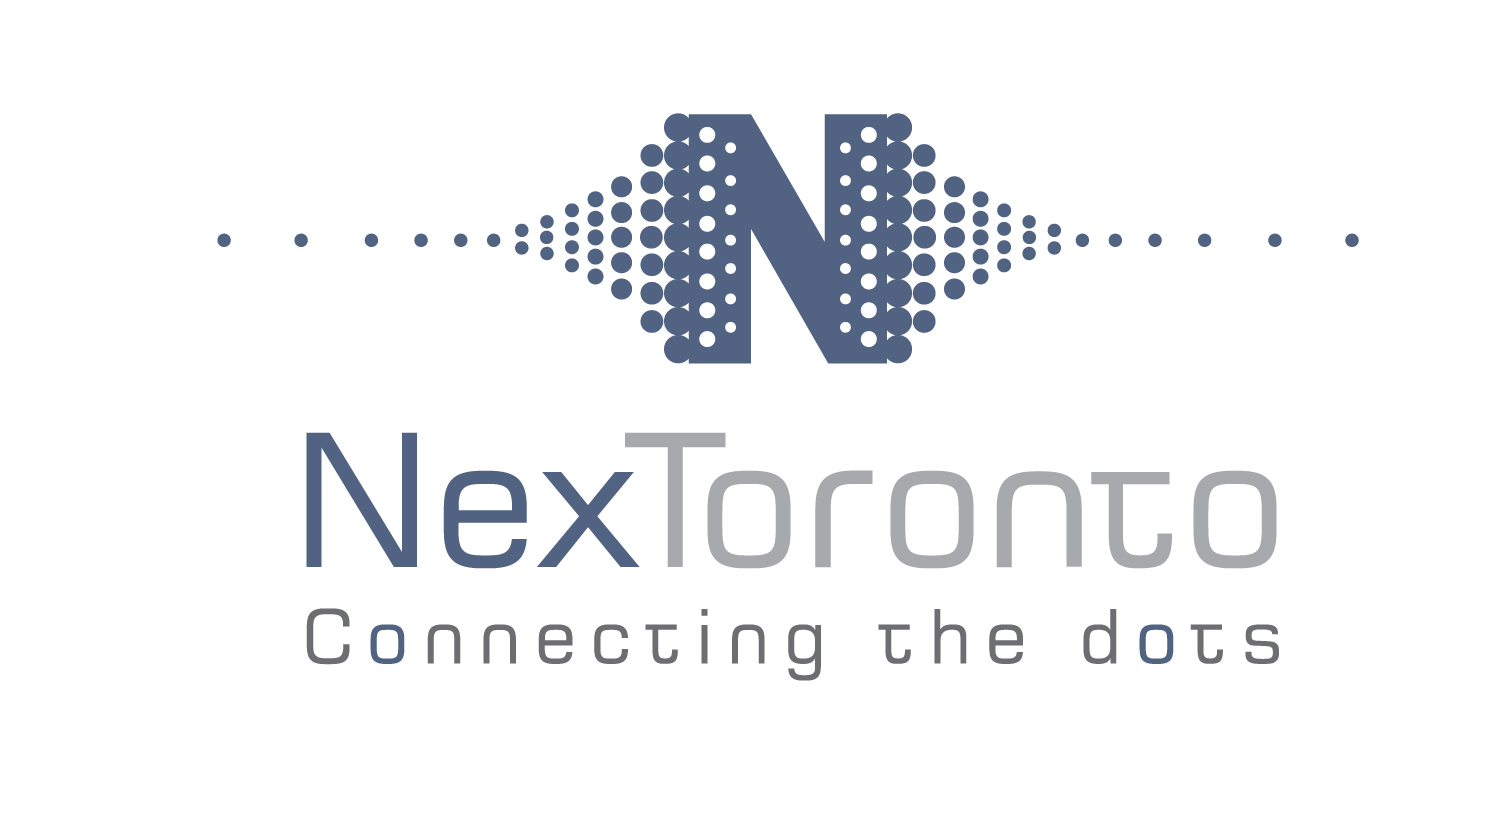 Nextoronto logo